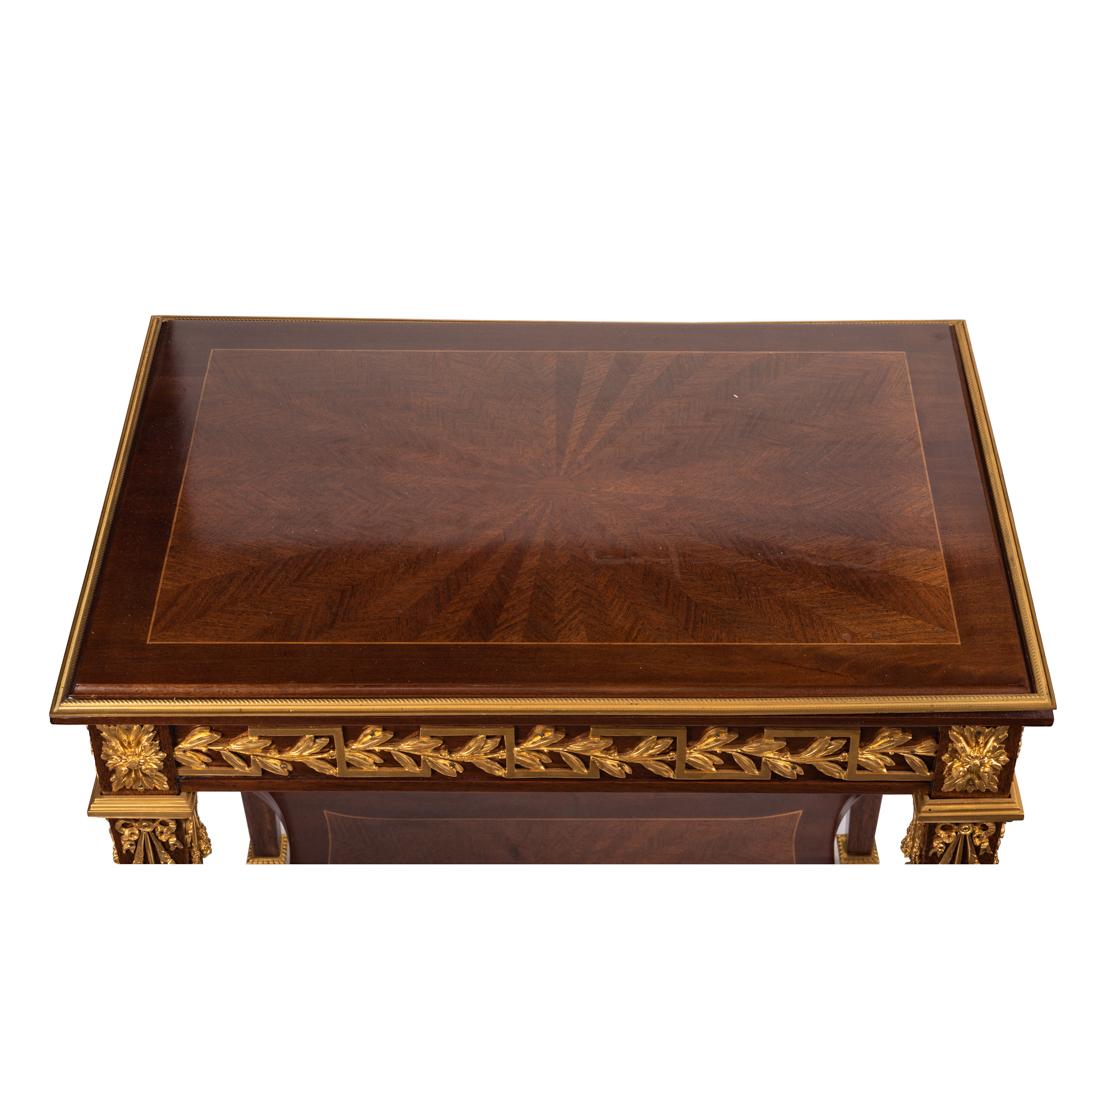 Ein Tisch im Louis XVI-Stil aus massivem Amaranth mit vergoldeten Bronzebeschlägen, der eine Friesschublade enthält,
Maße: Höhe 19,5 in. (49,53 cm.)
Breite 24 in. (60,96 cm.)
Tiefe 16 Zoll. (40,64 cm.)